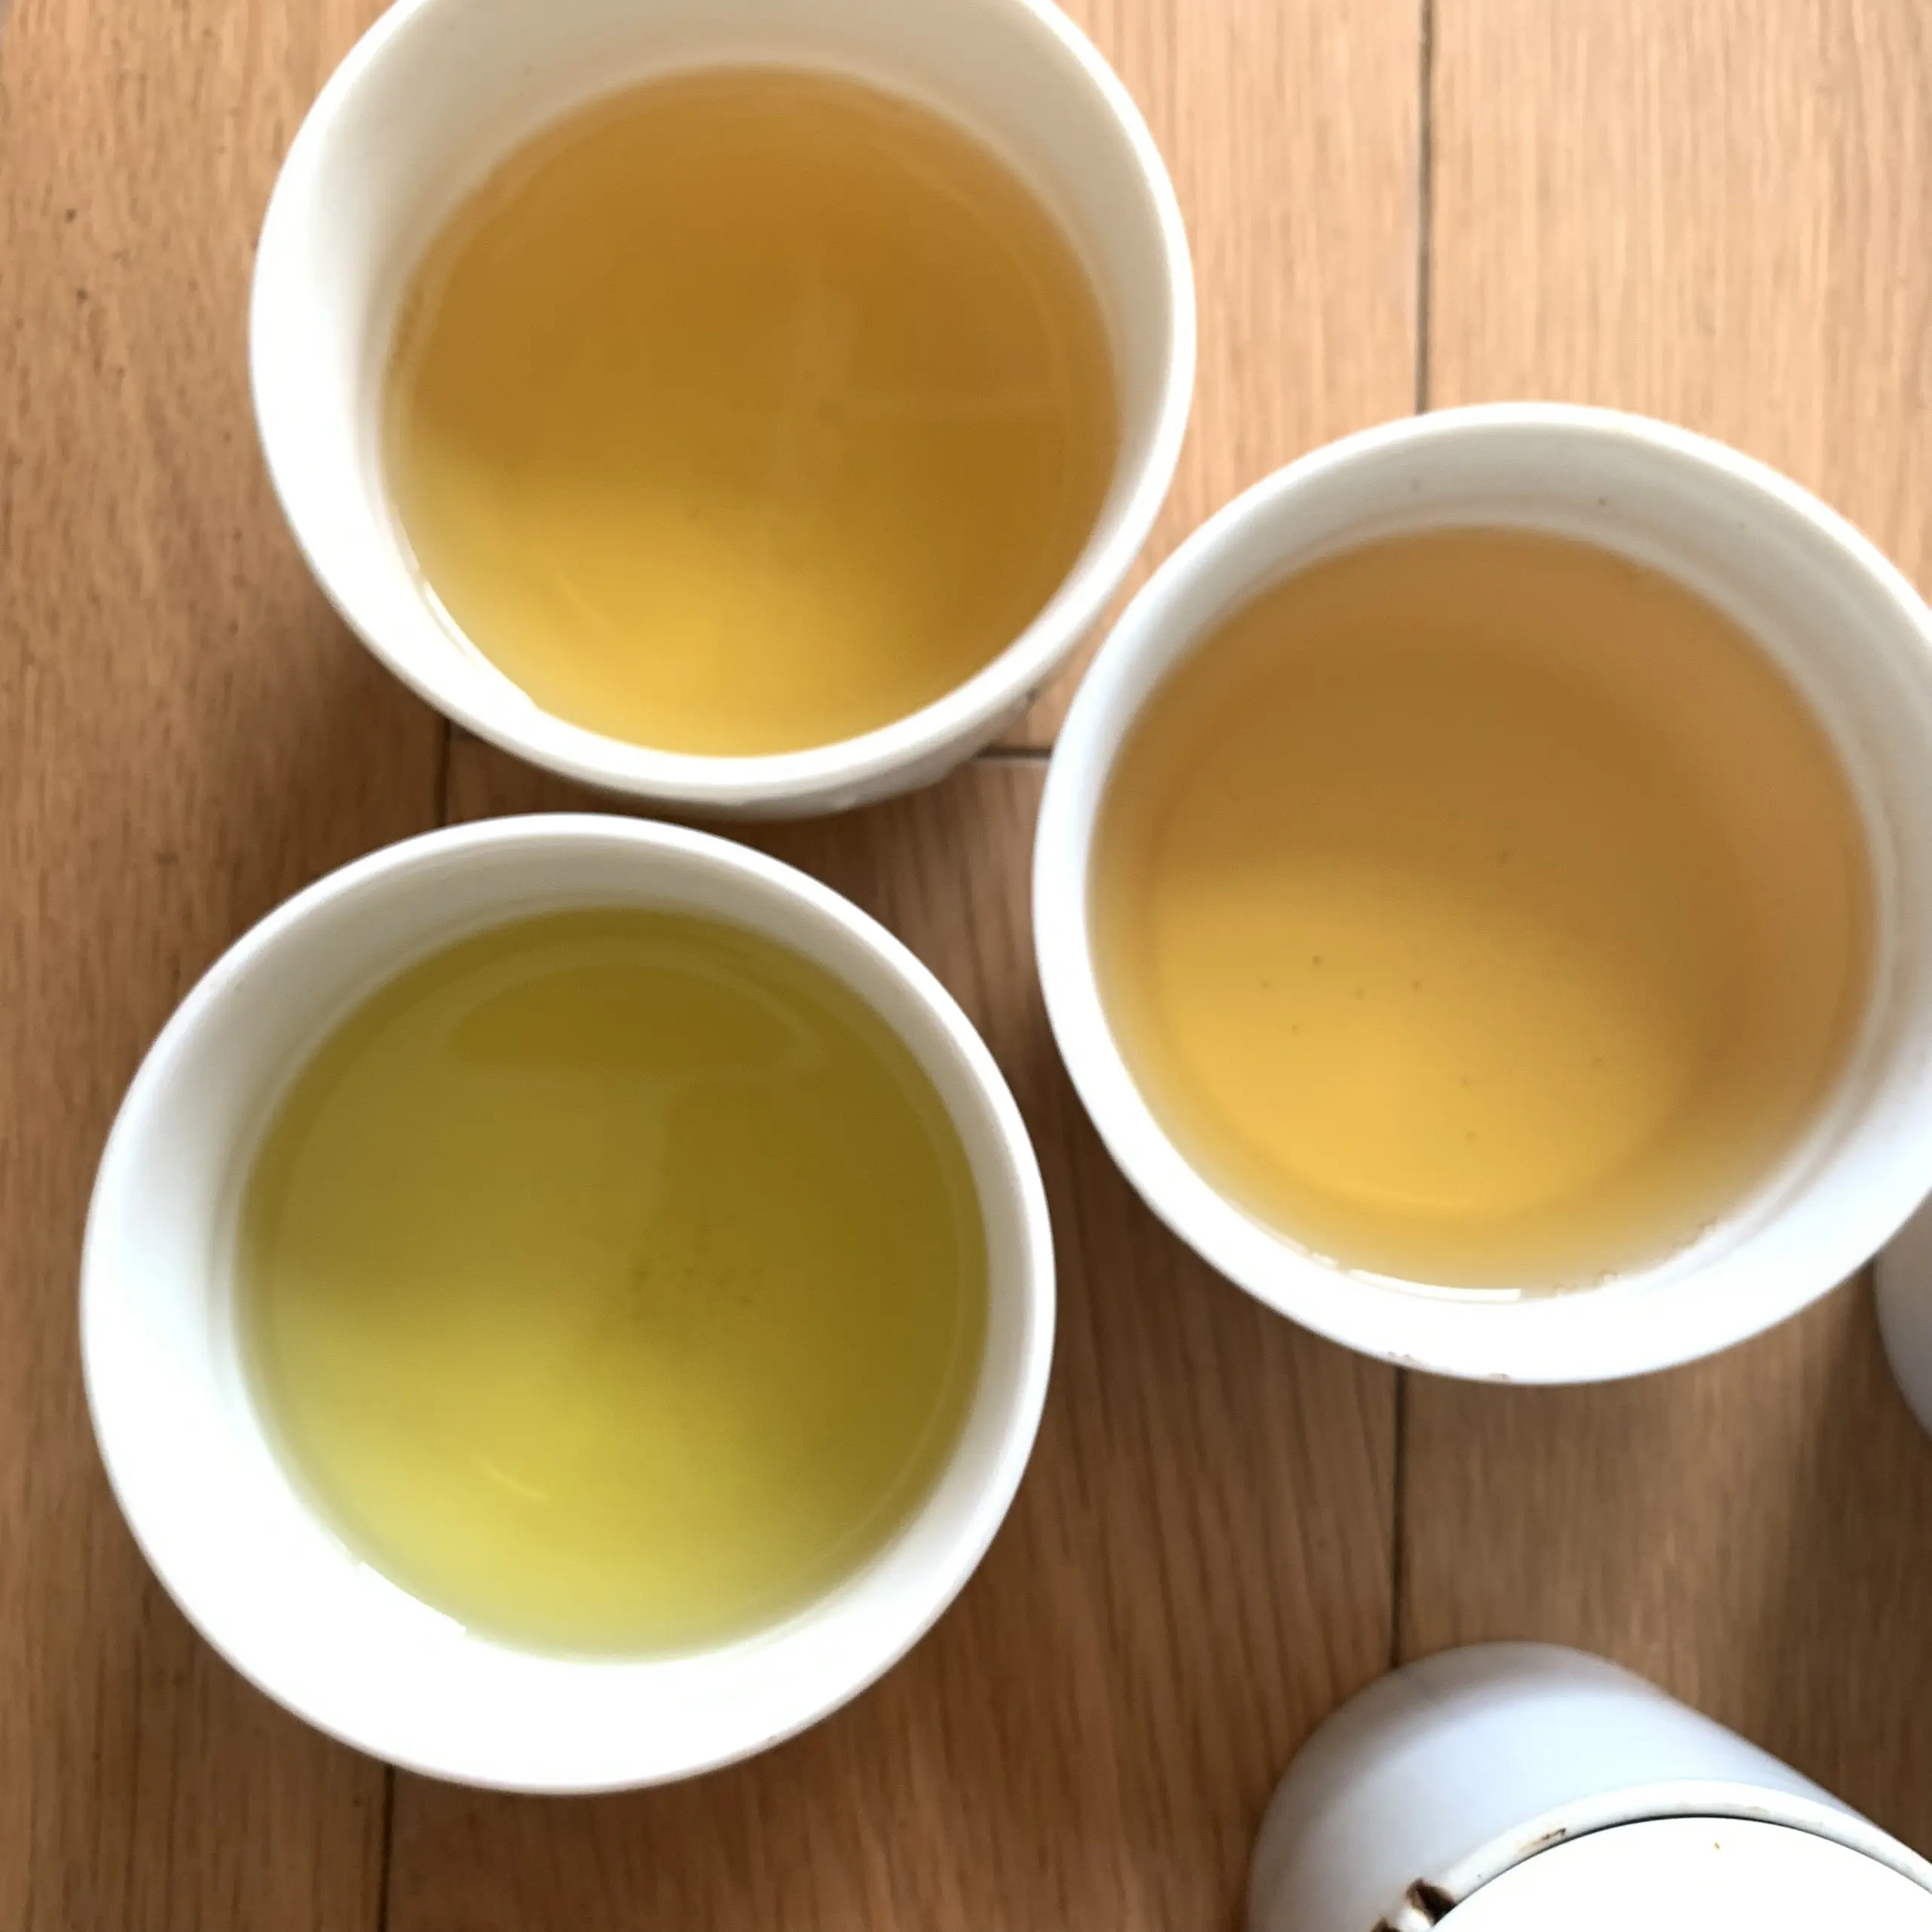 Yongnang — thé vert au vietnam, PRODUCTION de thé vert